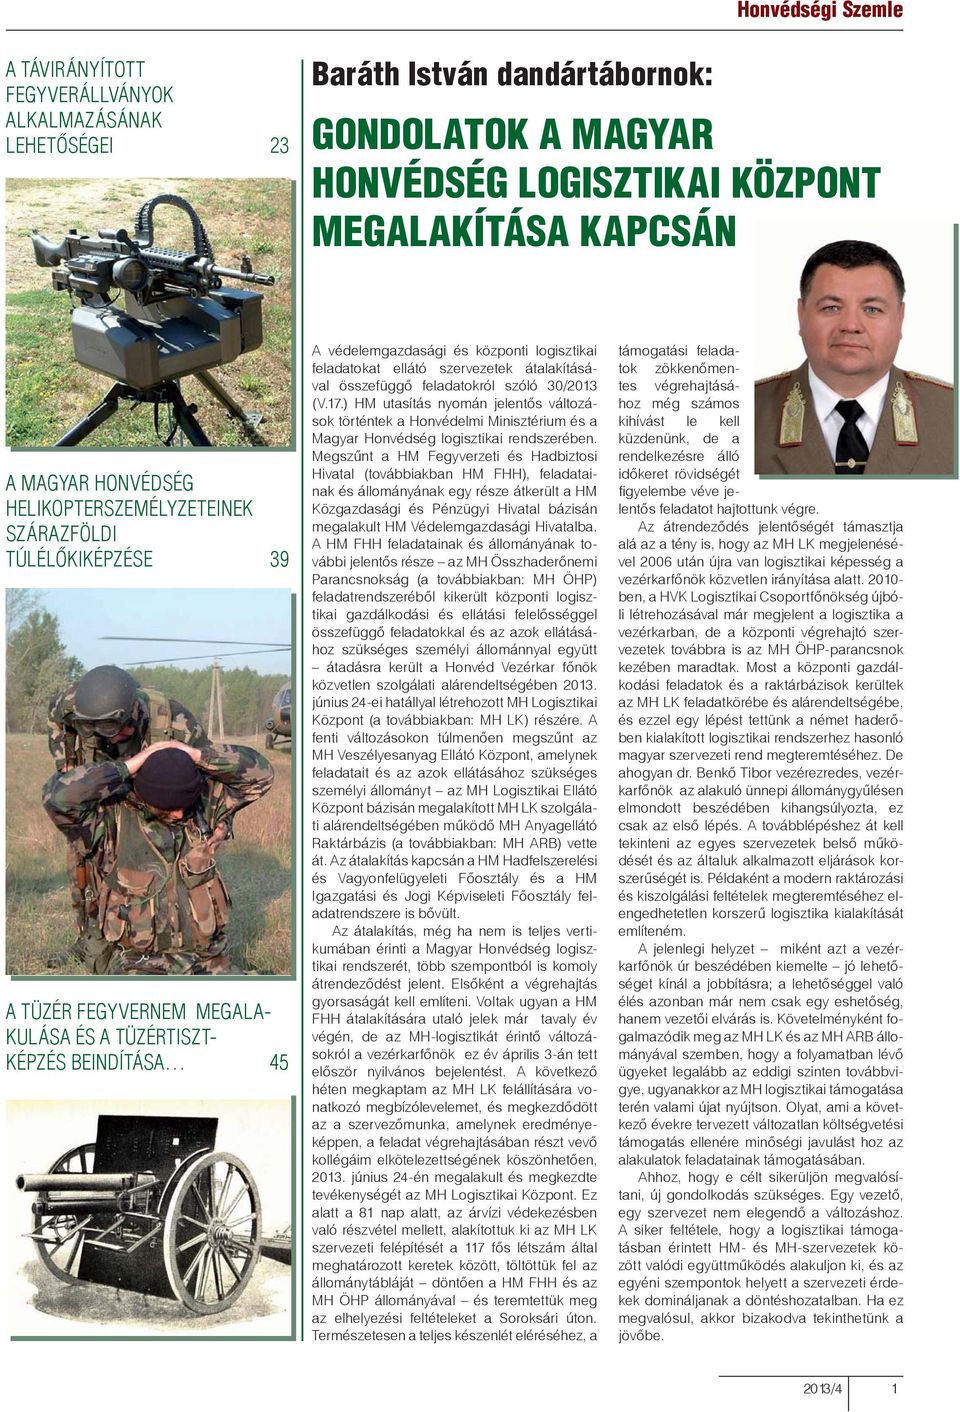 szervezetek átalakításával összefüggő feladatokról szóló 30/2013 (V.17.) HM utasítás nyomán jelentős változások történtek a Honvédelmi Minisztérium és a Magyar Honvédség logisztikai rendszerében.